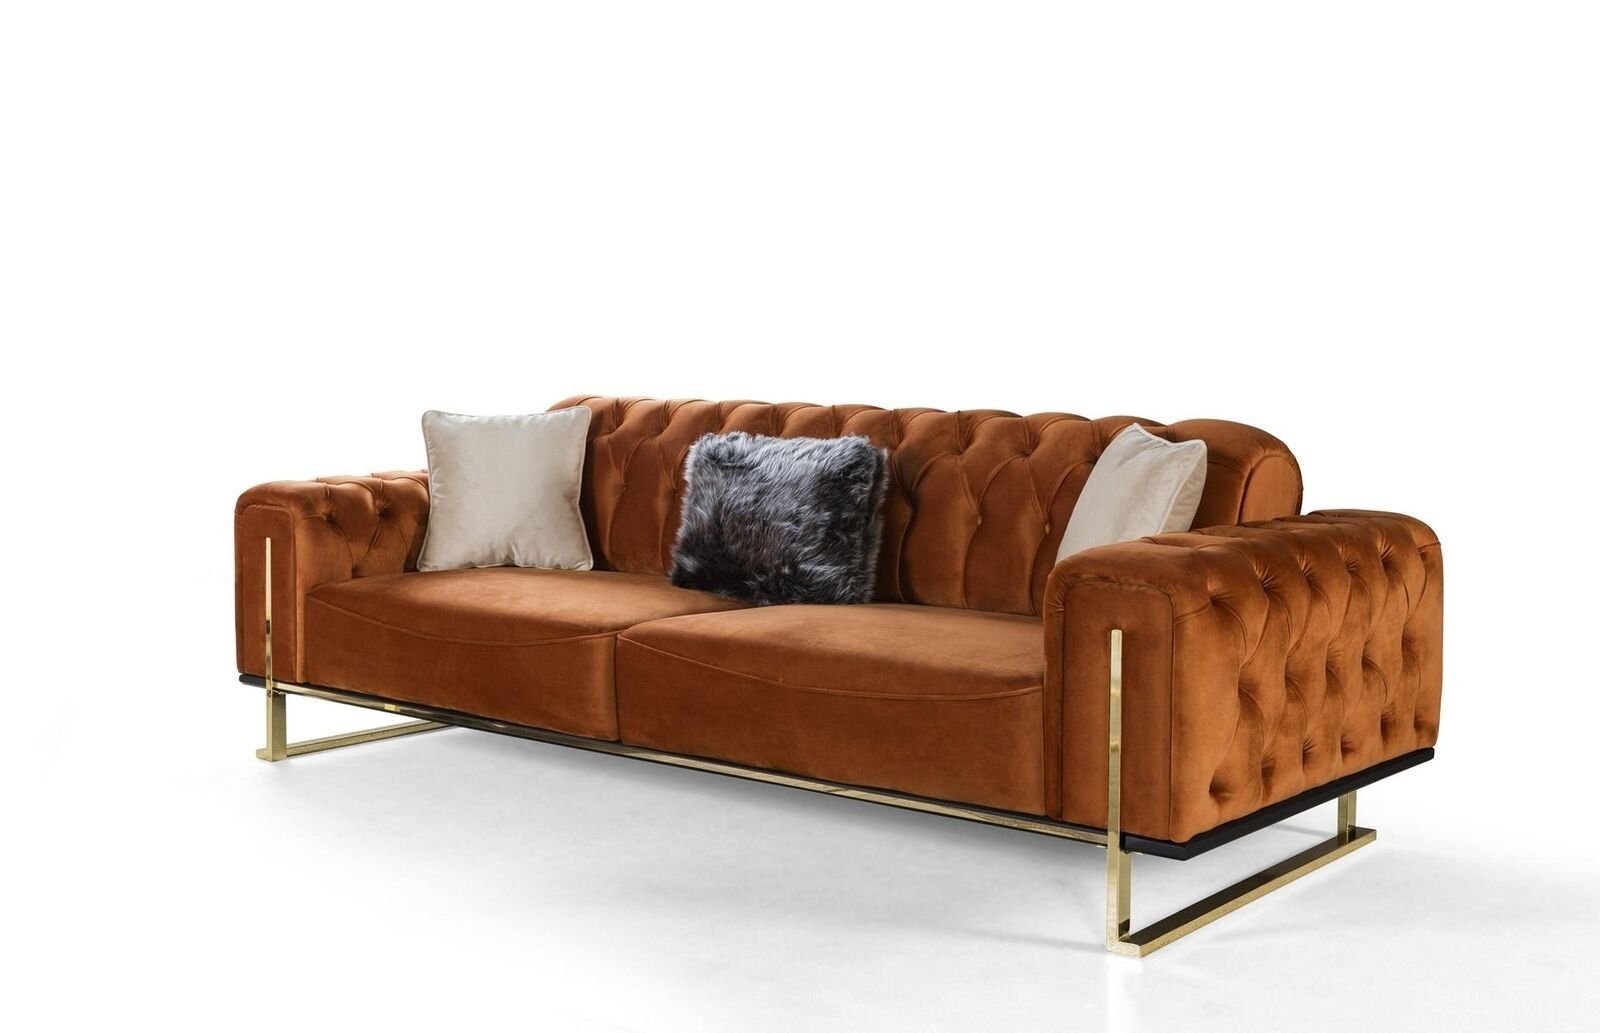 JVmoebel 3-Sitzer Chesterfield Sofa 3 - sitzer Braun Cognac Sofas Polster Textil Couchen, 1 Teile, Made in Europa